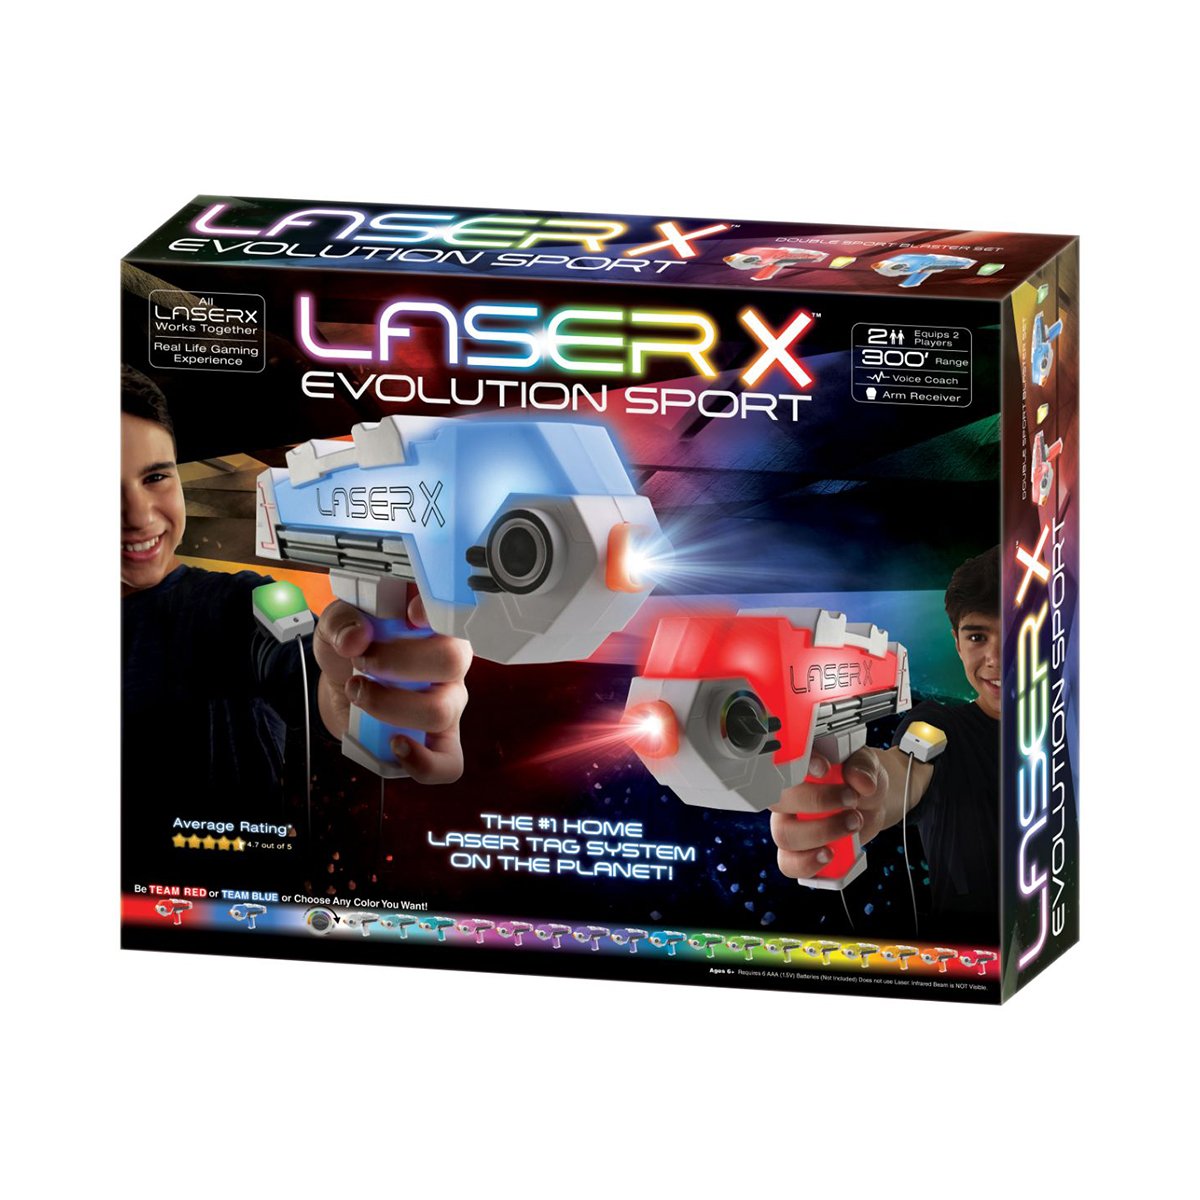 Blaster Evo Sport, Laser X Laser X